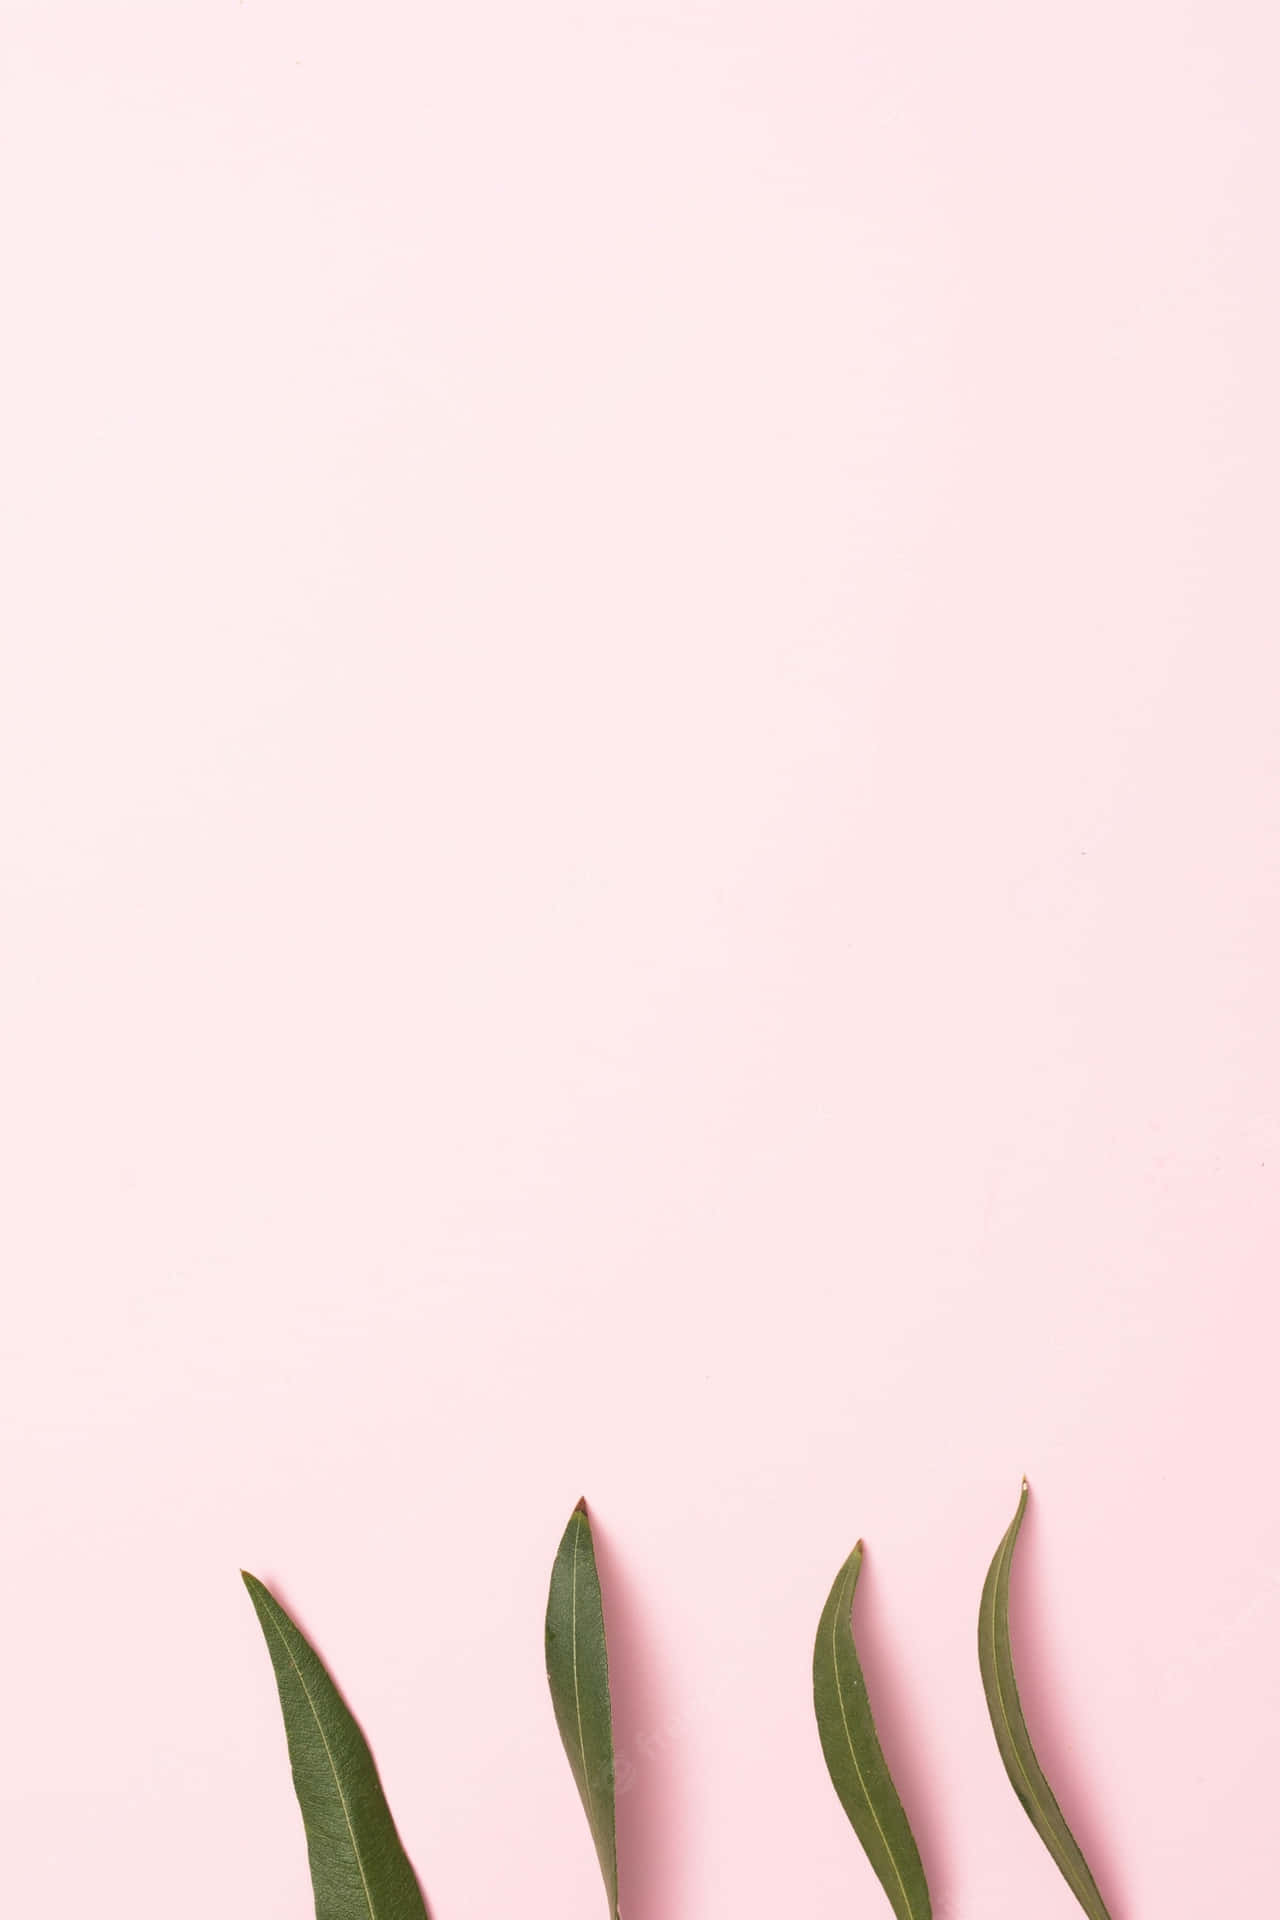 Et minimalistisk billede med lyse pink nuancer Wallpaper